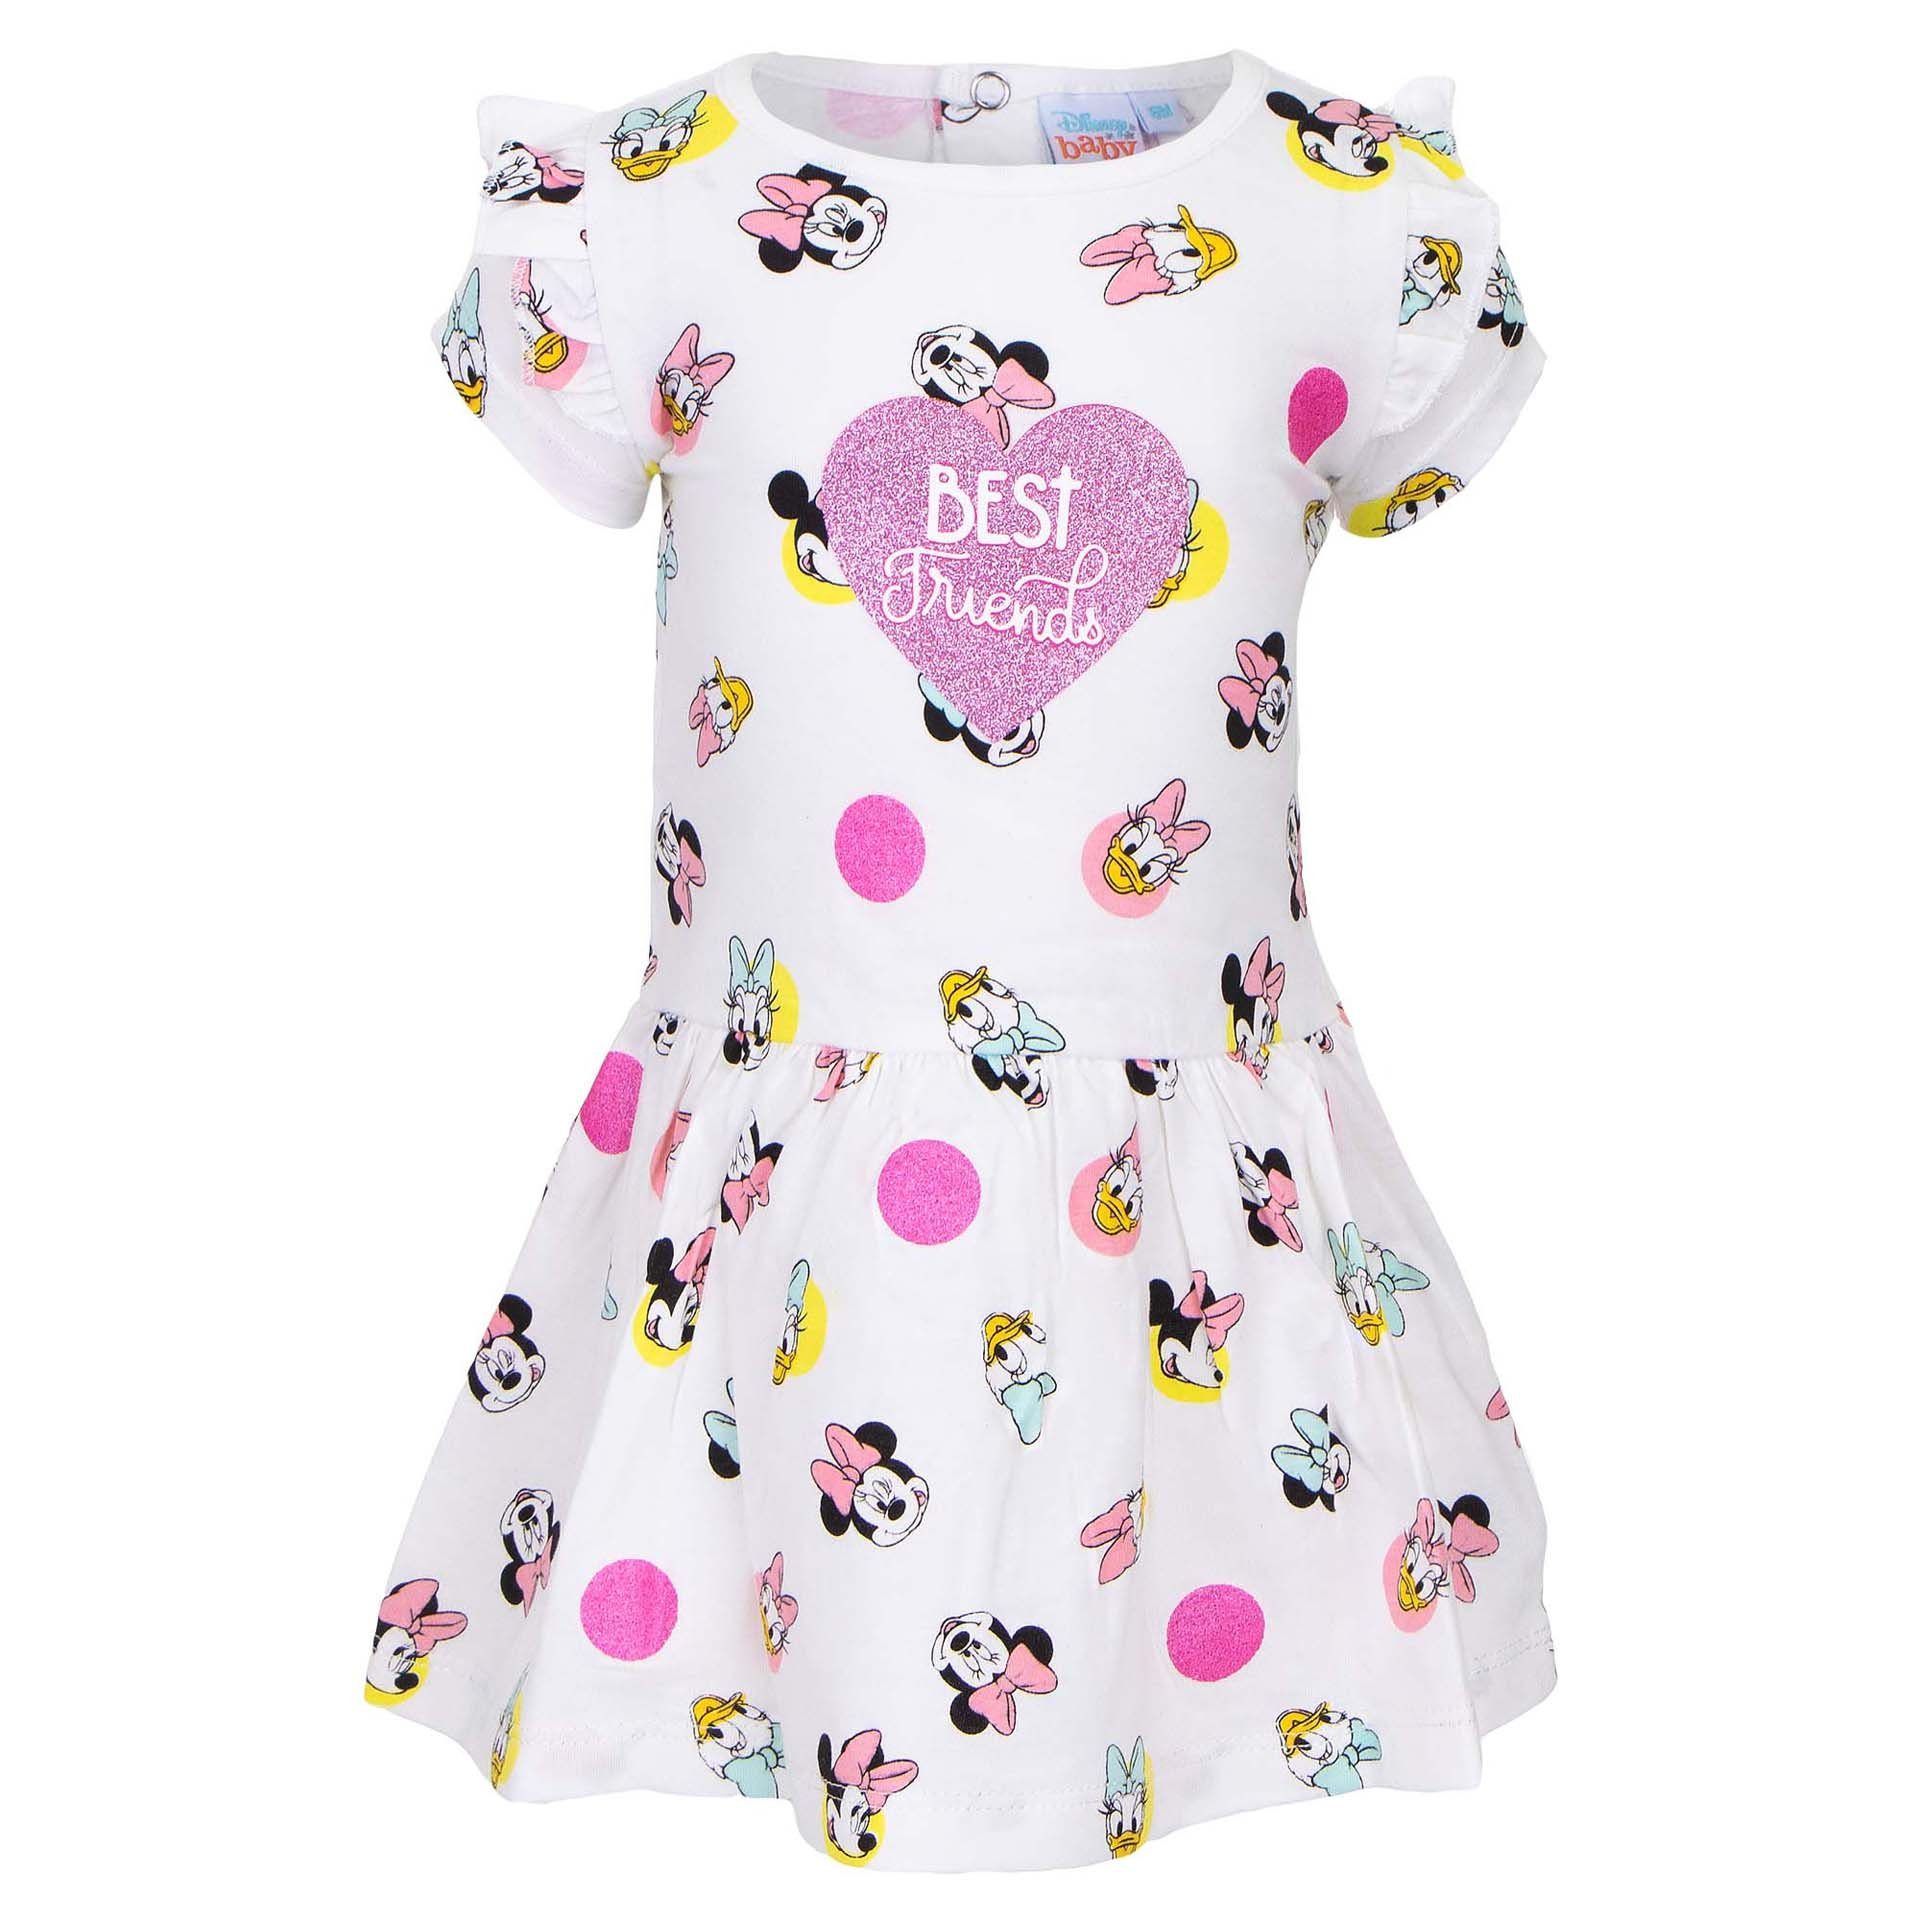 Disney Minnie Mouse Sommerkleid Minnie Maus und Daisy Duck Baby Kleid Gr.  68 bis 86, 100% baumwolle